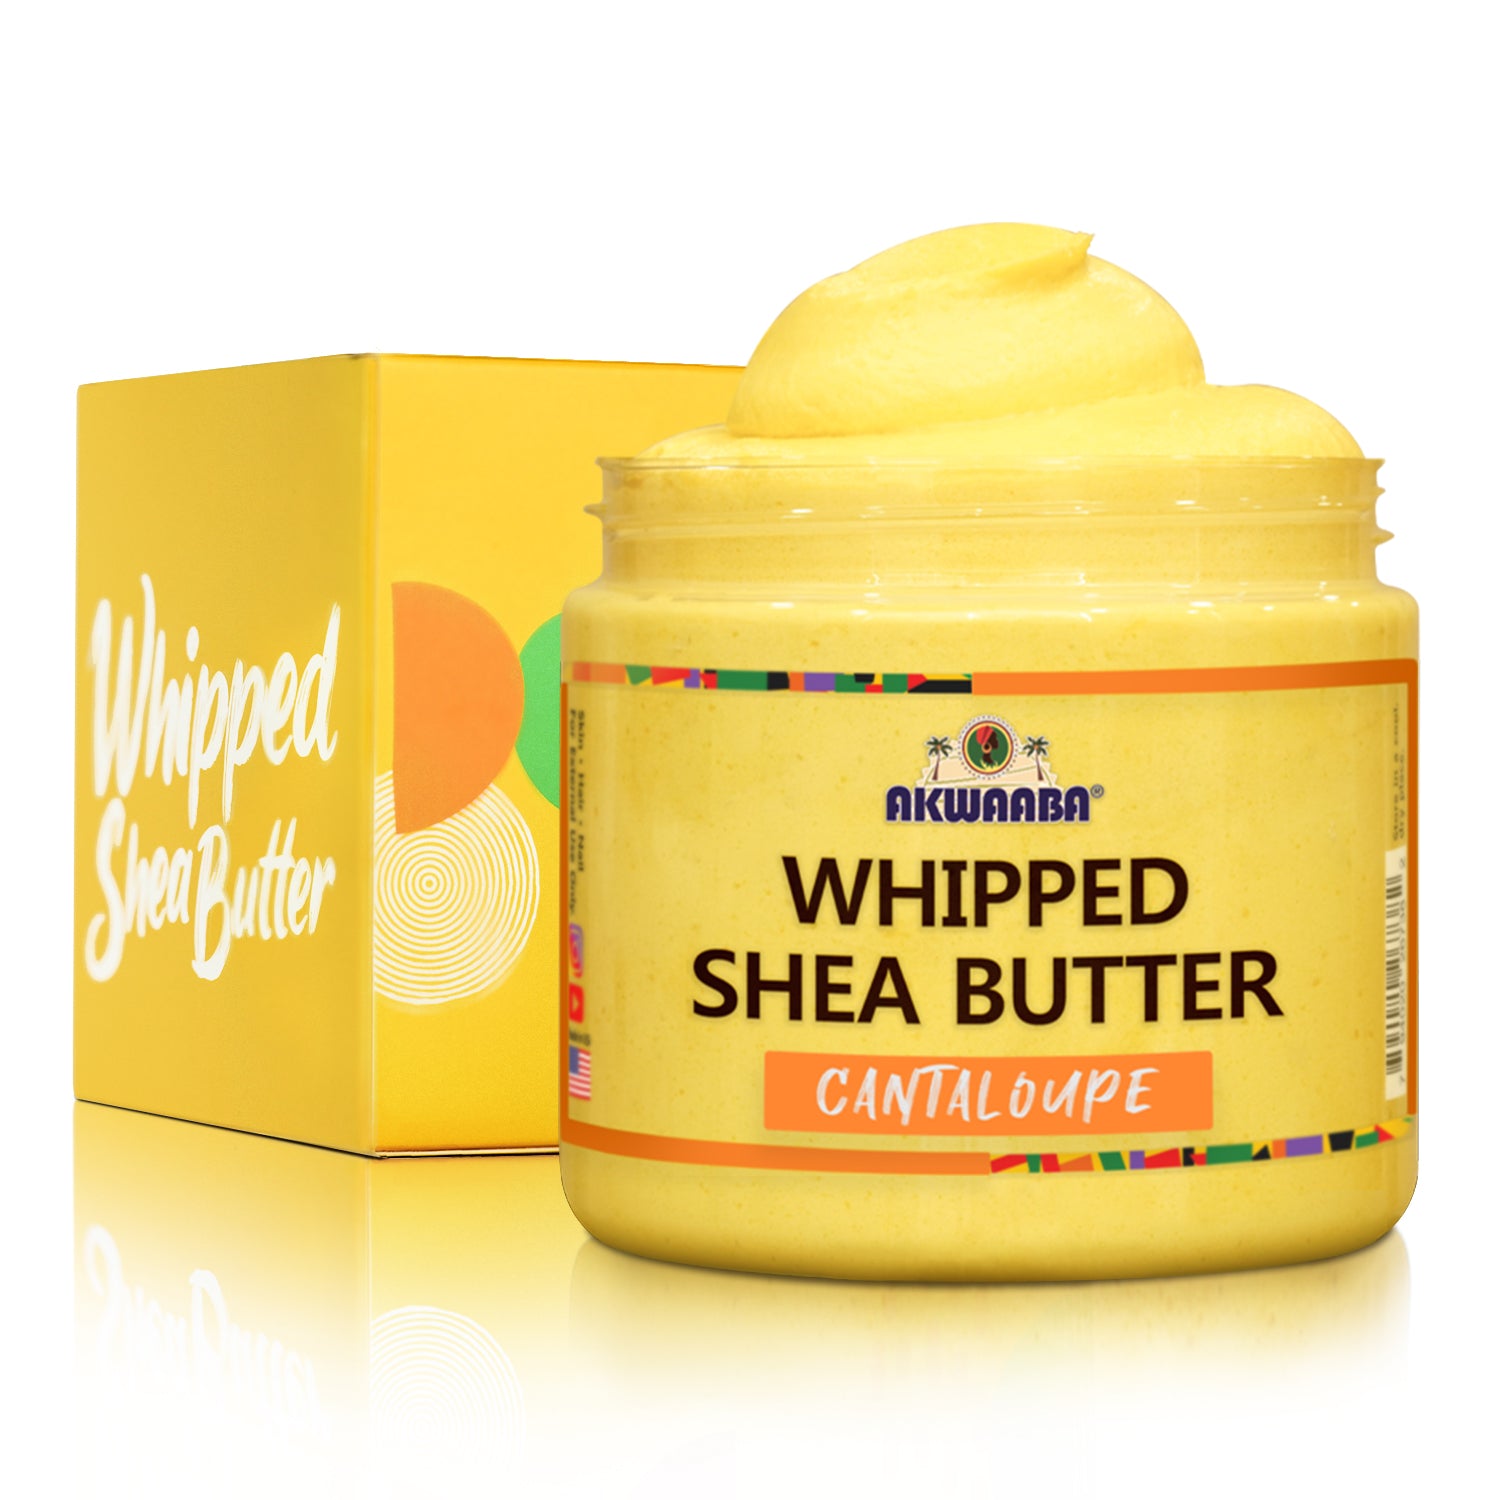 AKWAABA Whipped Shea Butter(Cantaloup) 12oz